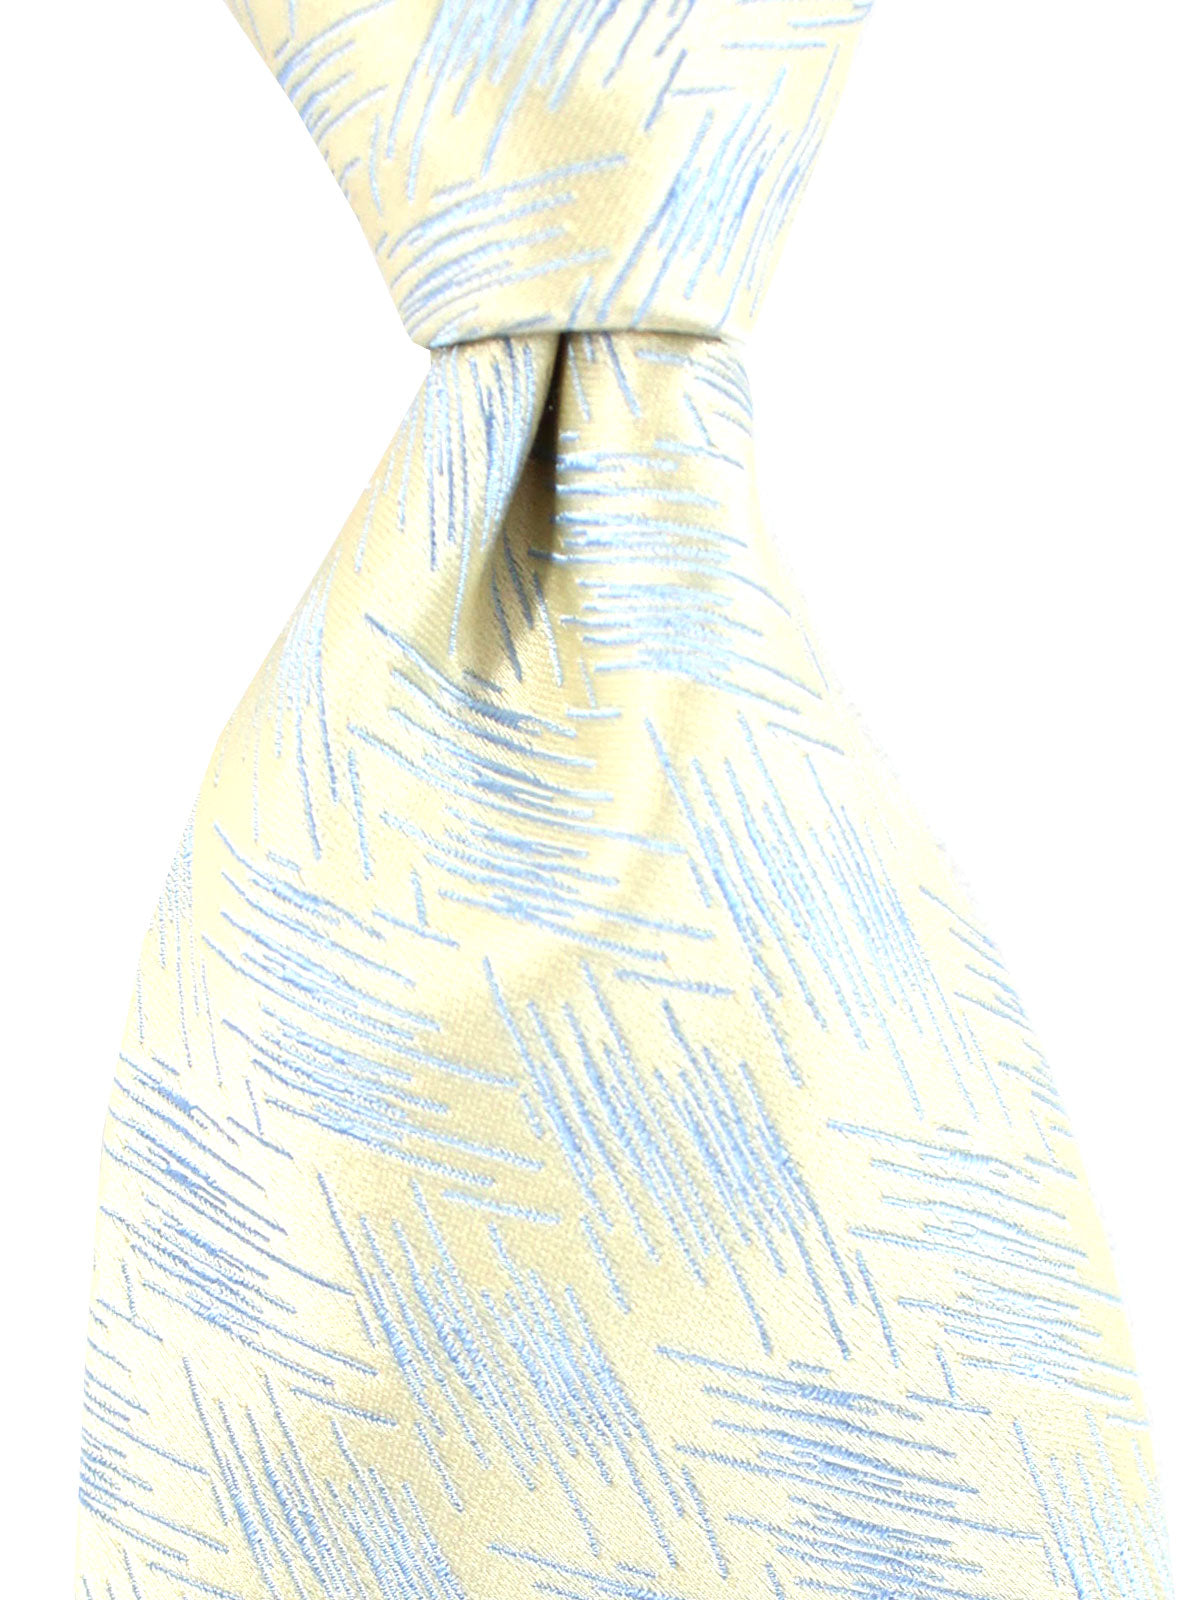 Zilli Sevenfold Tie Silver Blue Design - Wide Necktie